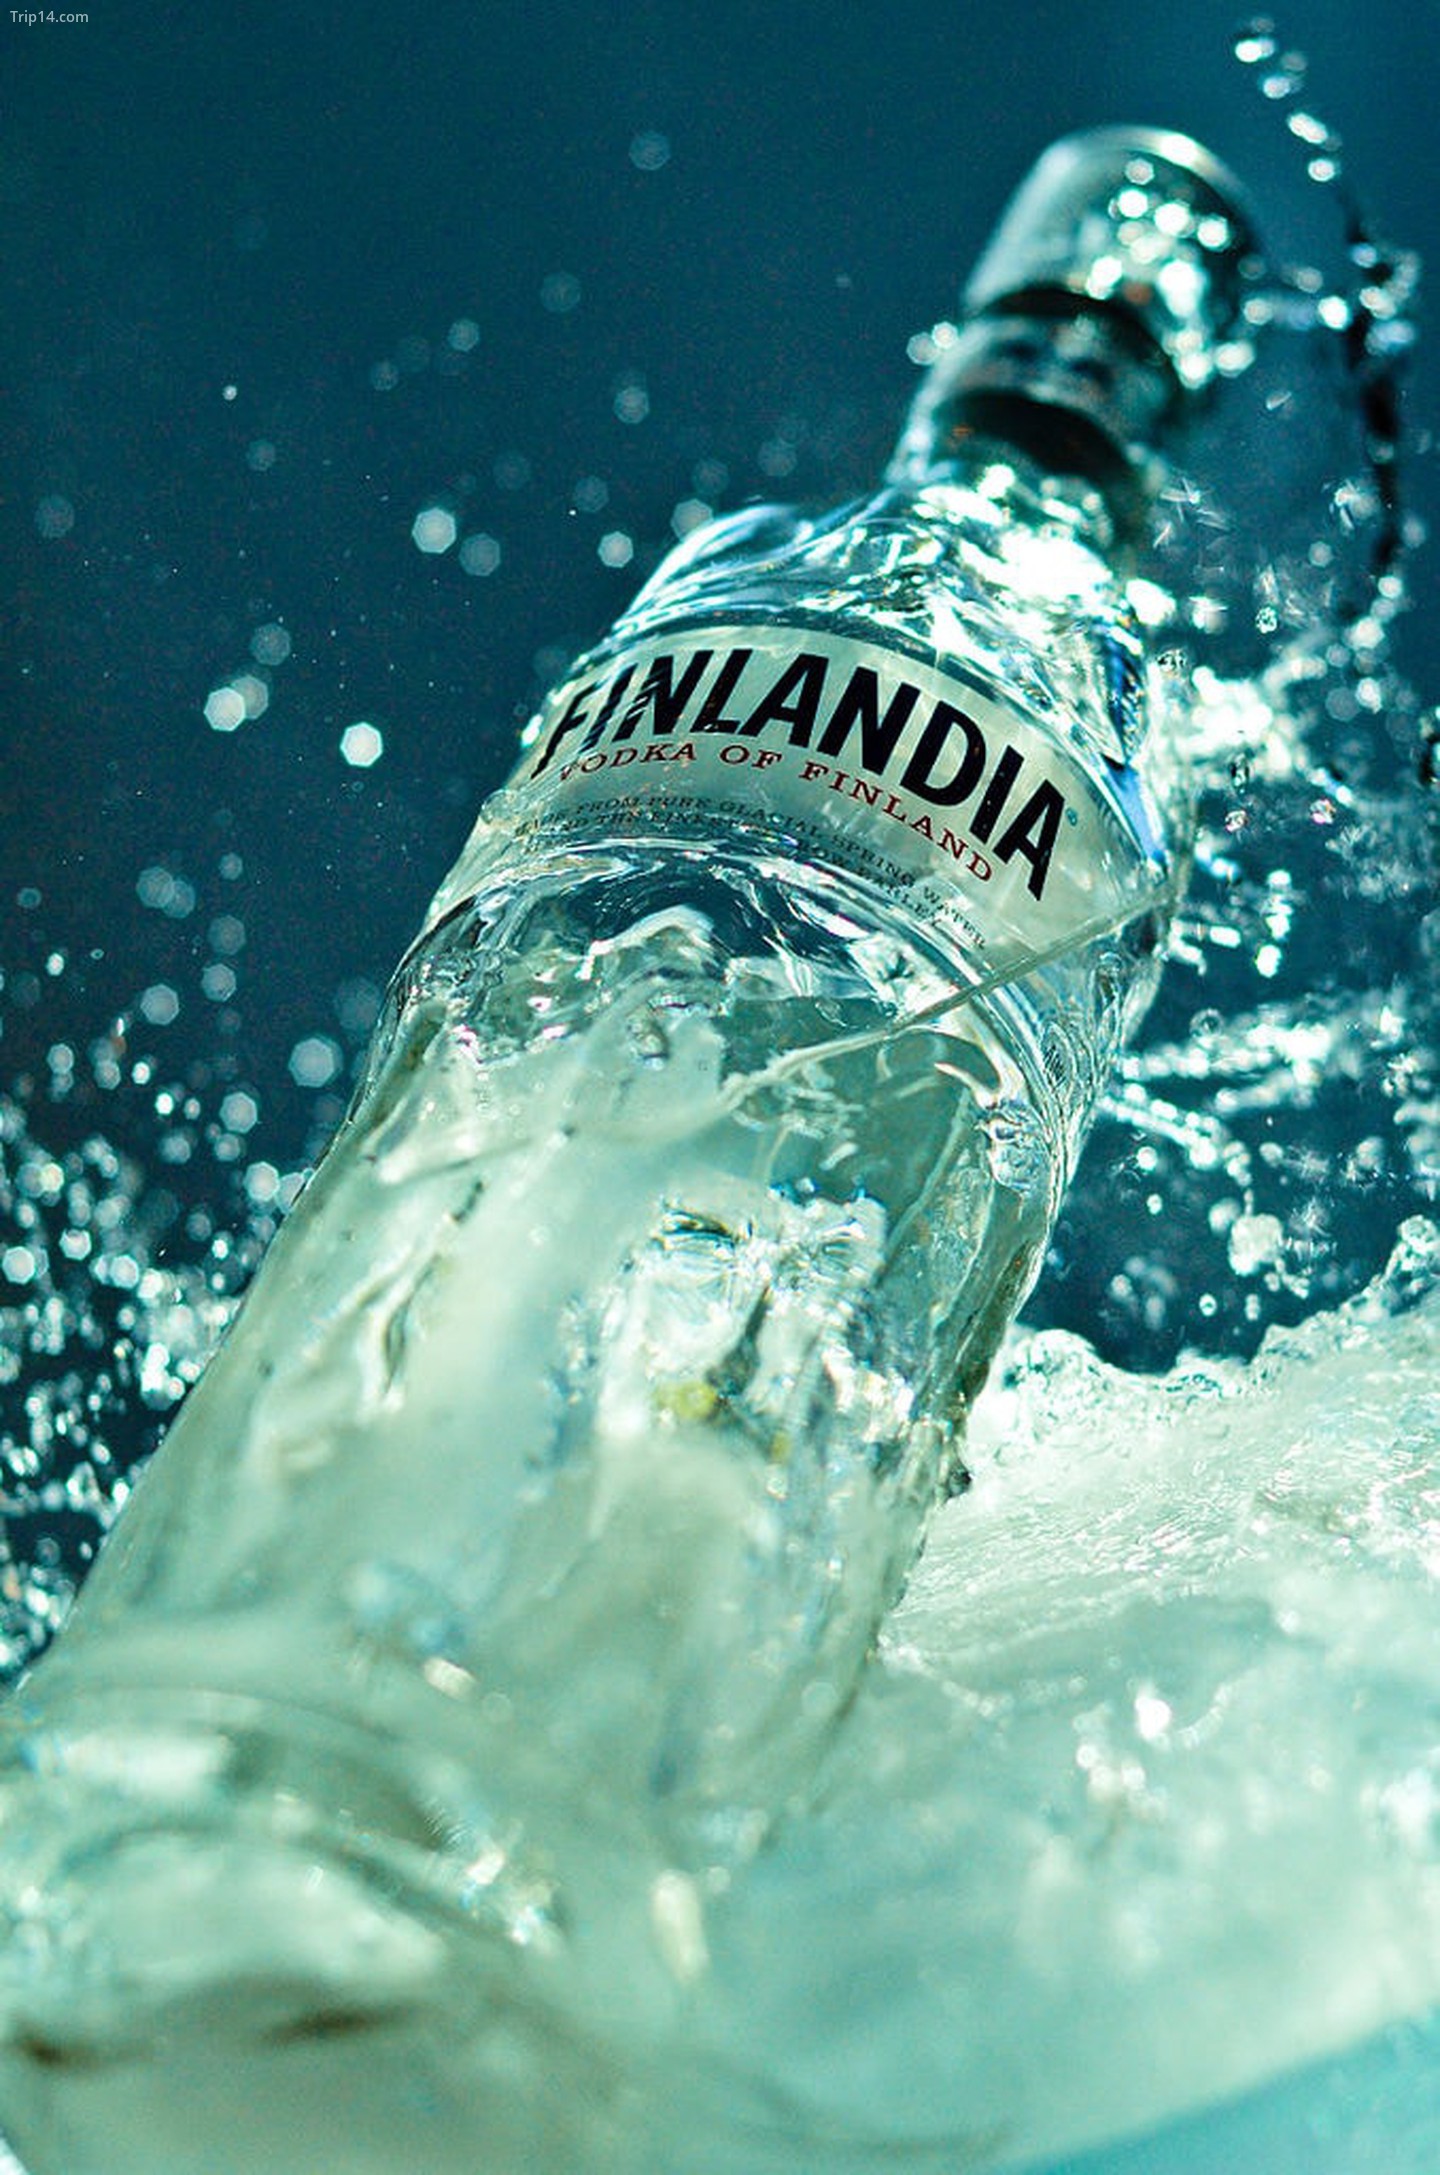  Một chai rượu vodka Finlandia.   |   